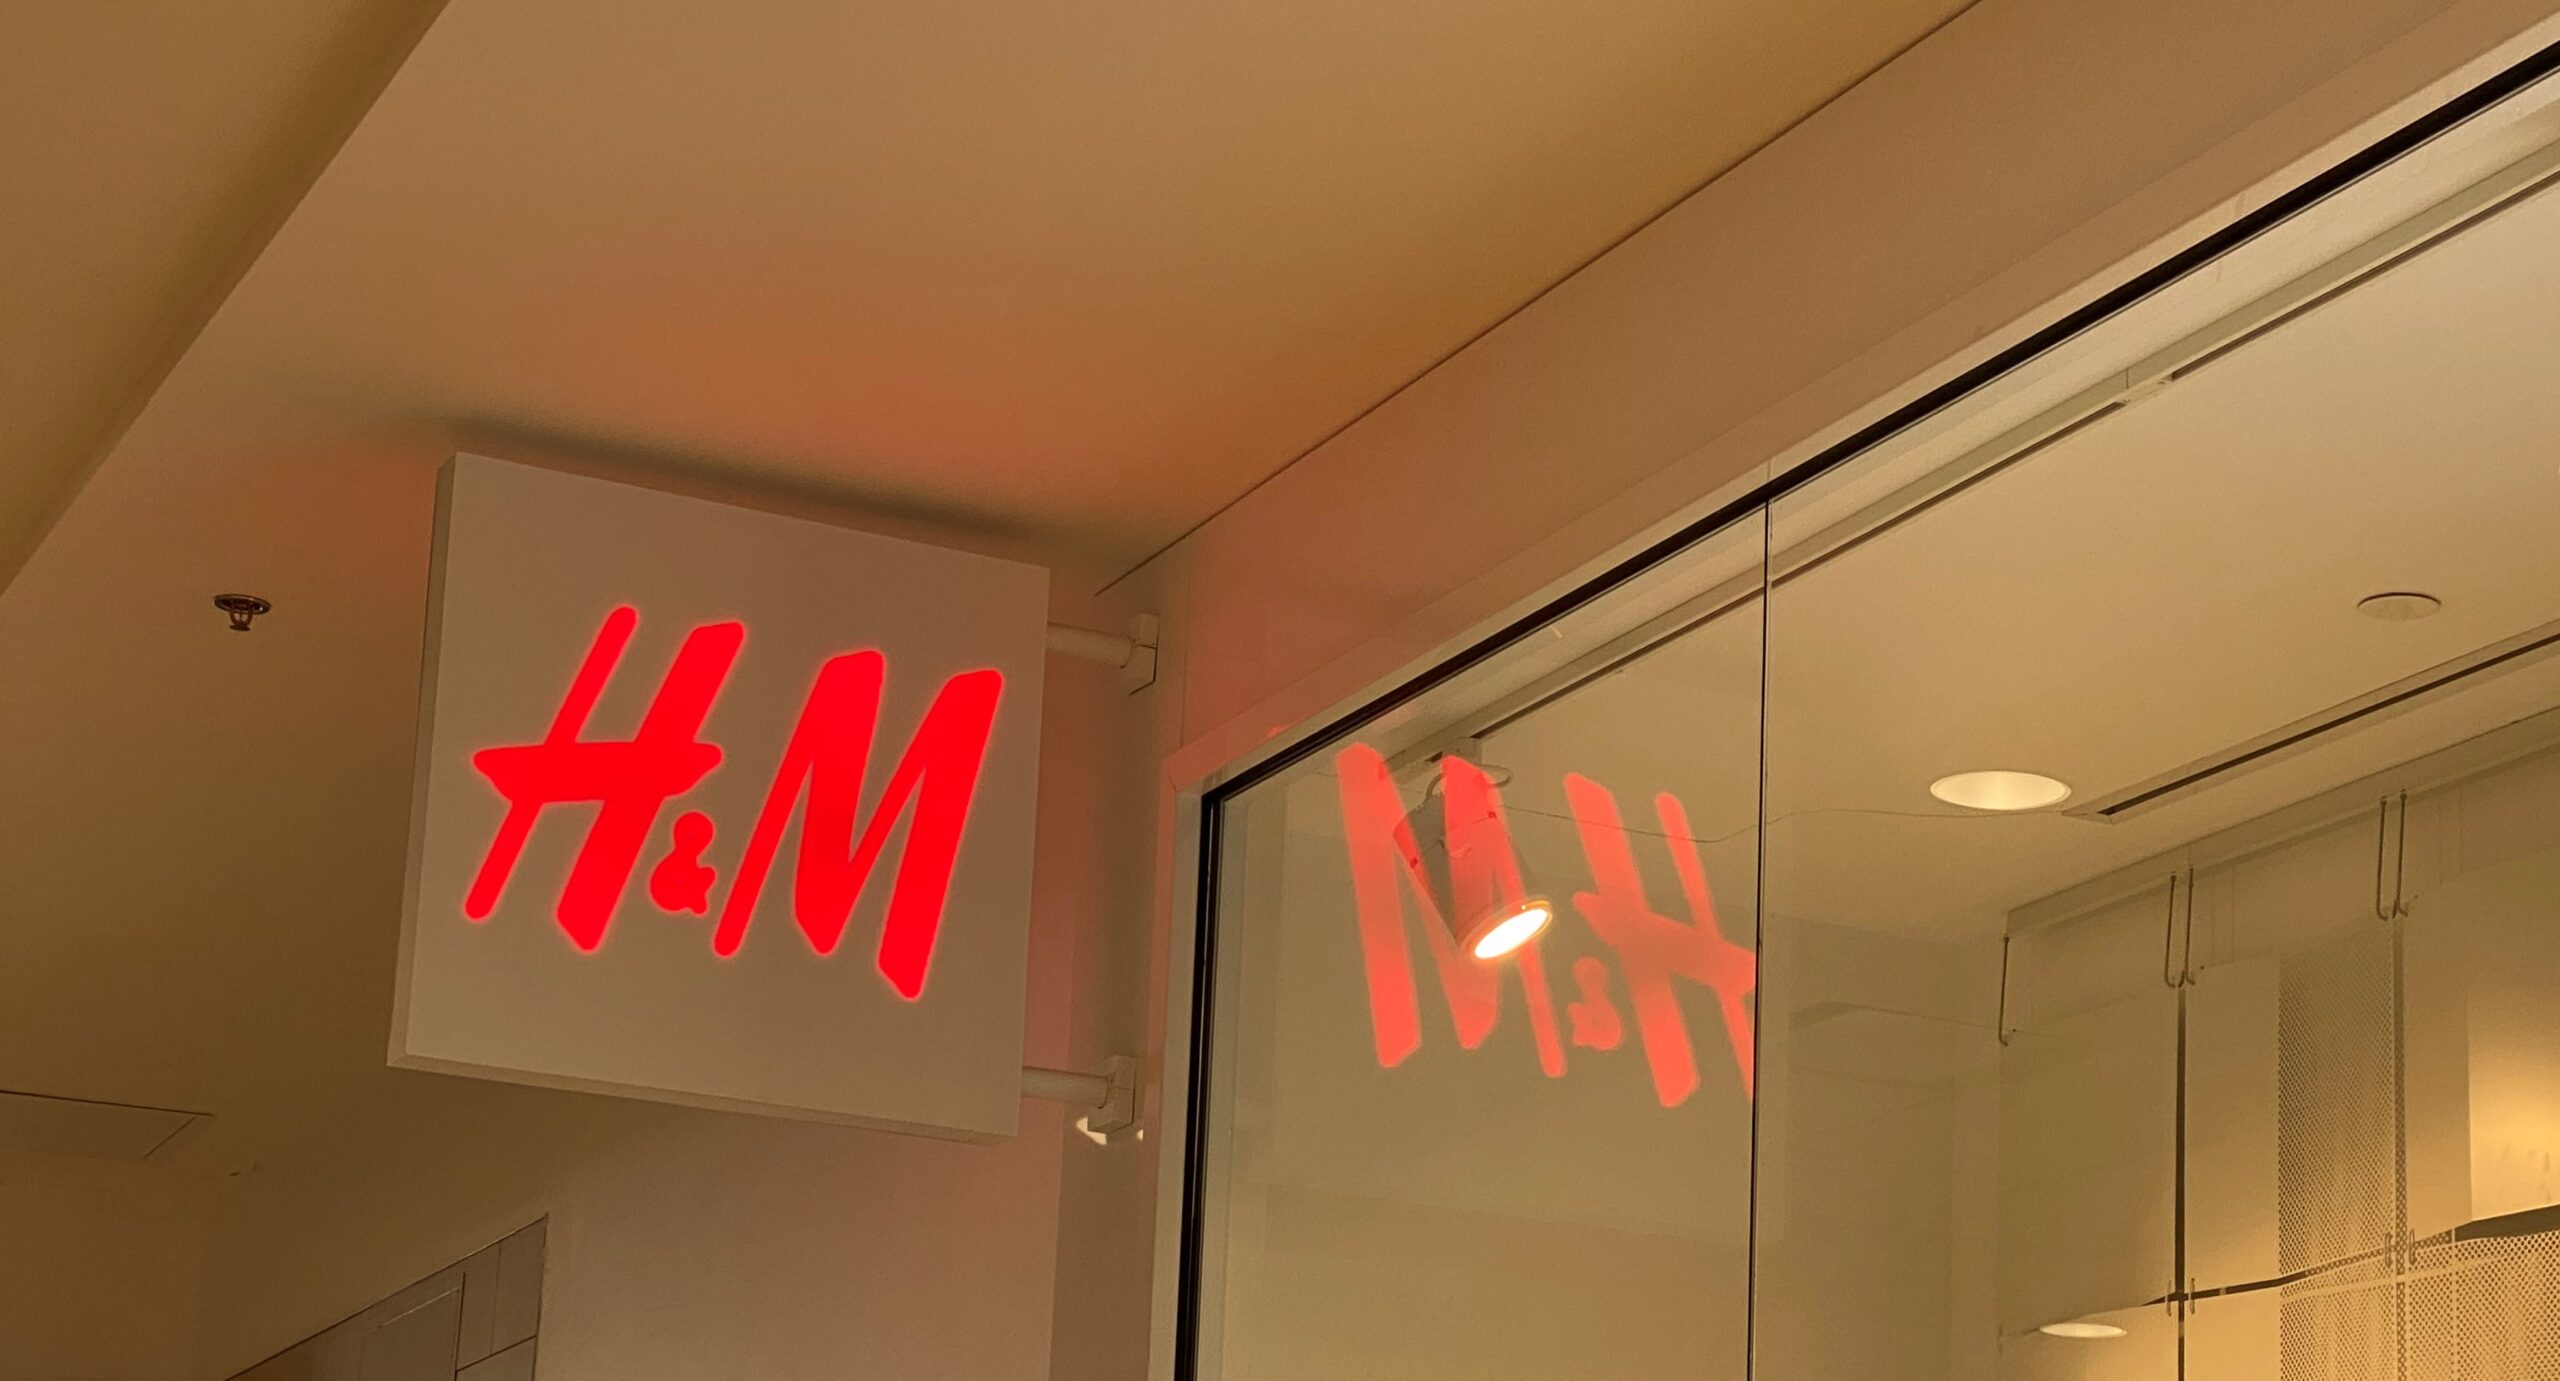 China Cancels H&M